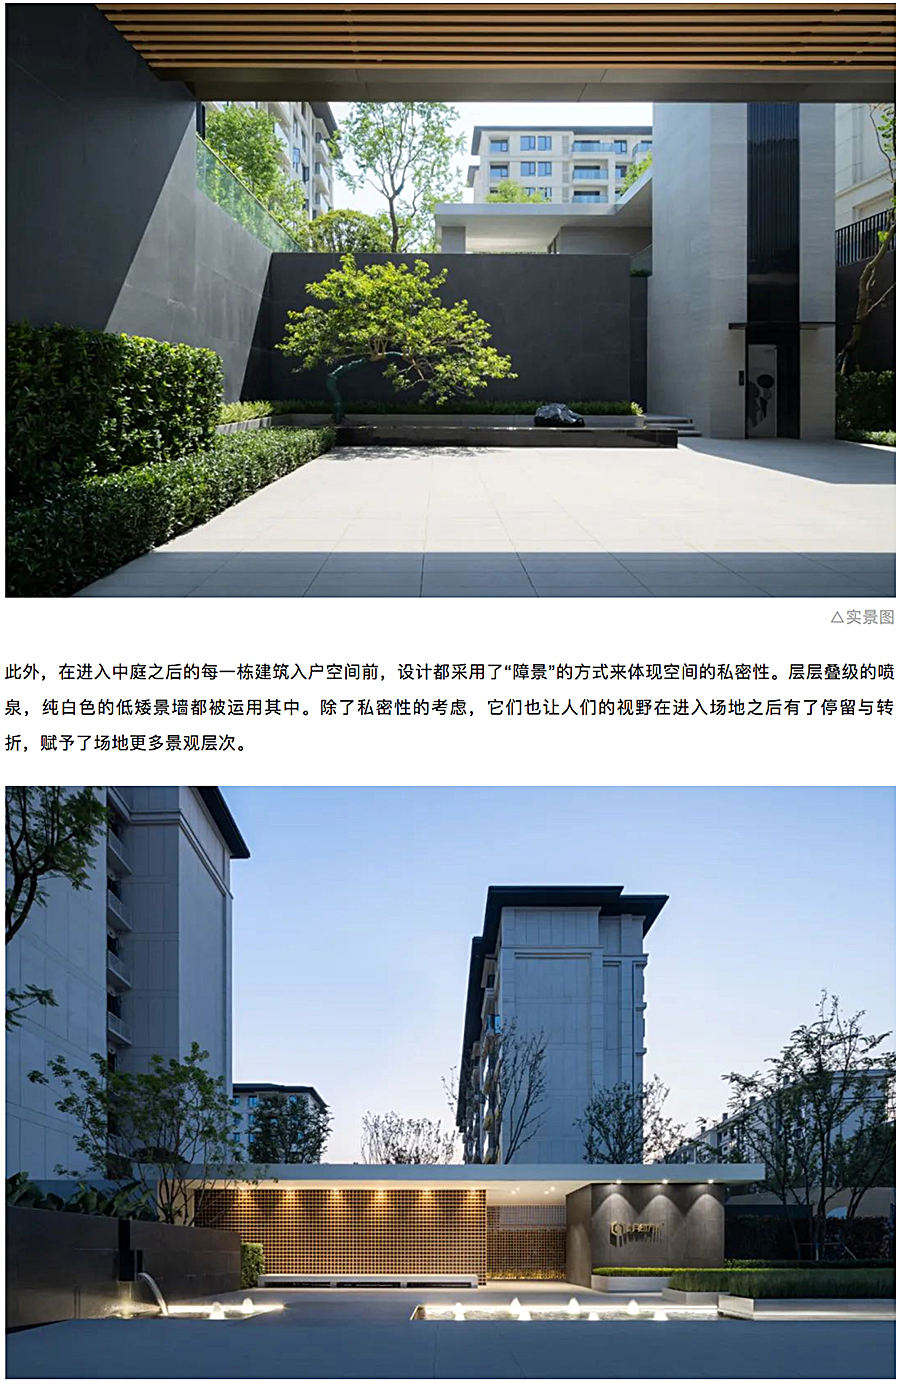 创新洋房社区-引领当代生活-_-重庆东原·月印万川_0010_图层-11.jpg